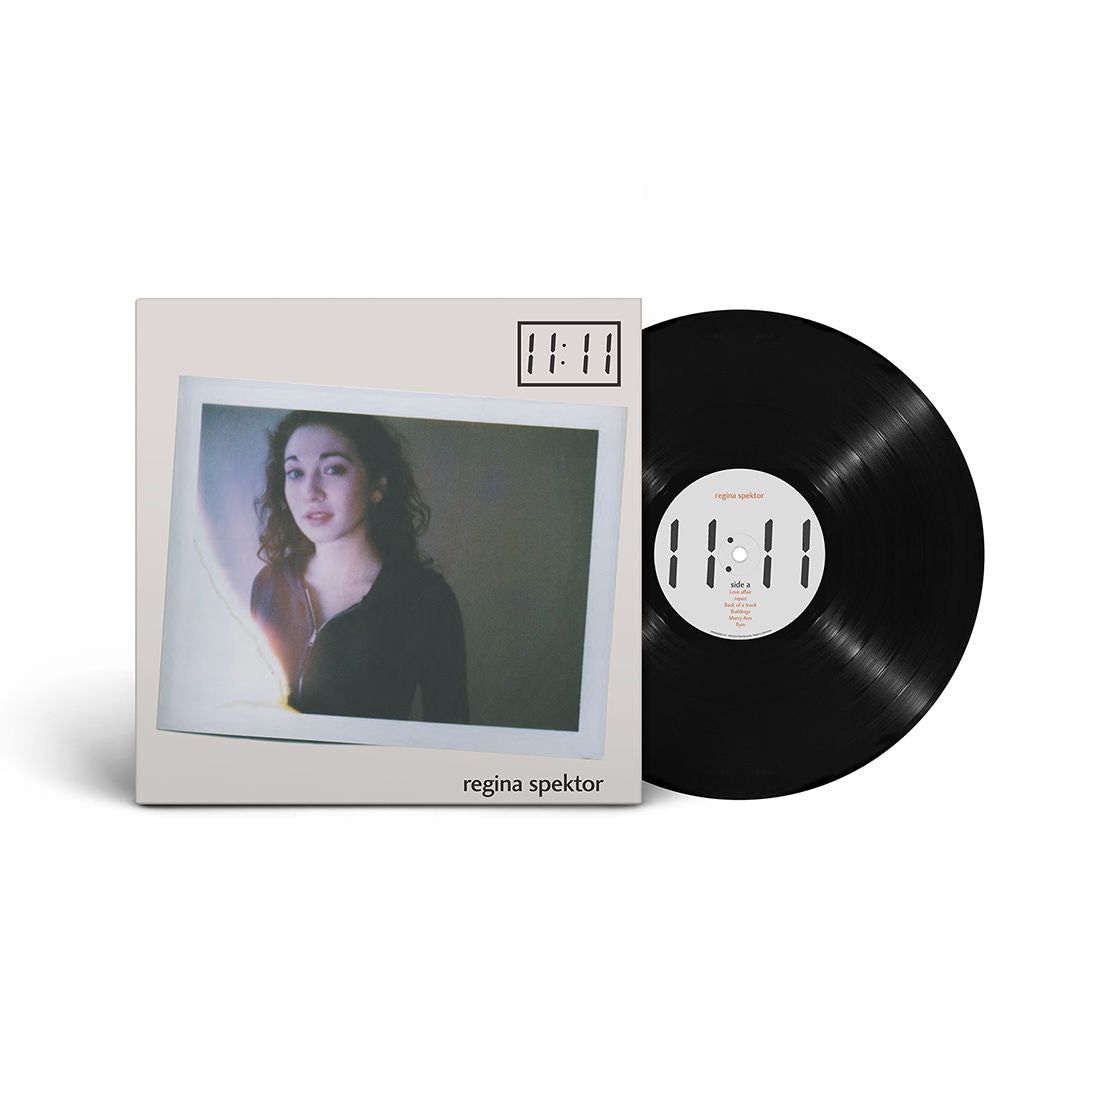 Regina Spektor - 11:11: Vinyl LP